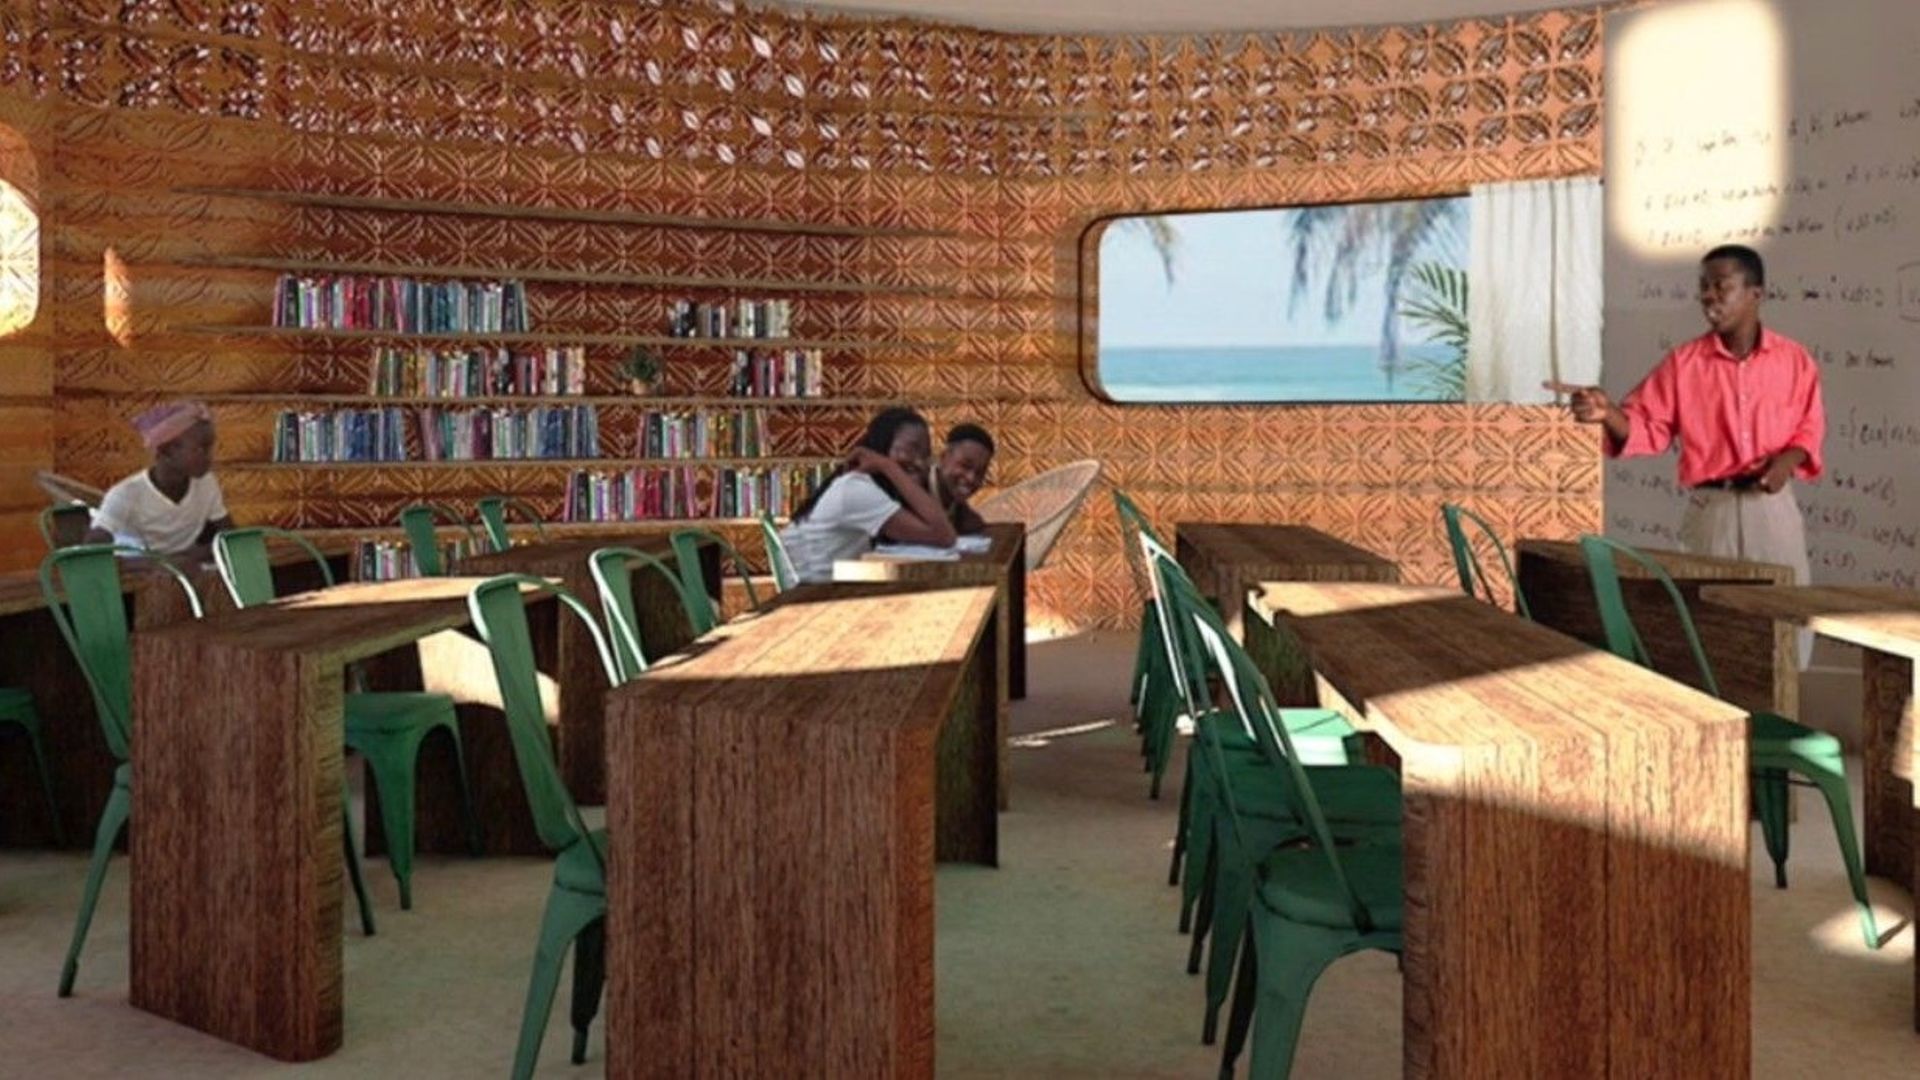 Fermes verticales, murs imprimés en 3D... L'ouverture de cette école d'un nouveau genre est prévue pour l'été 2021-2022 à Madagascar.